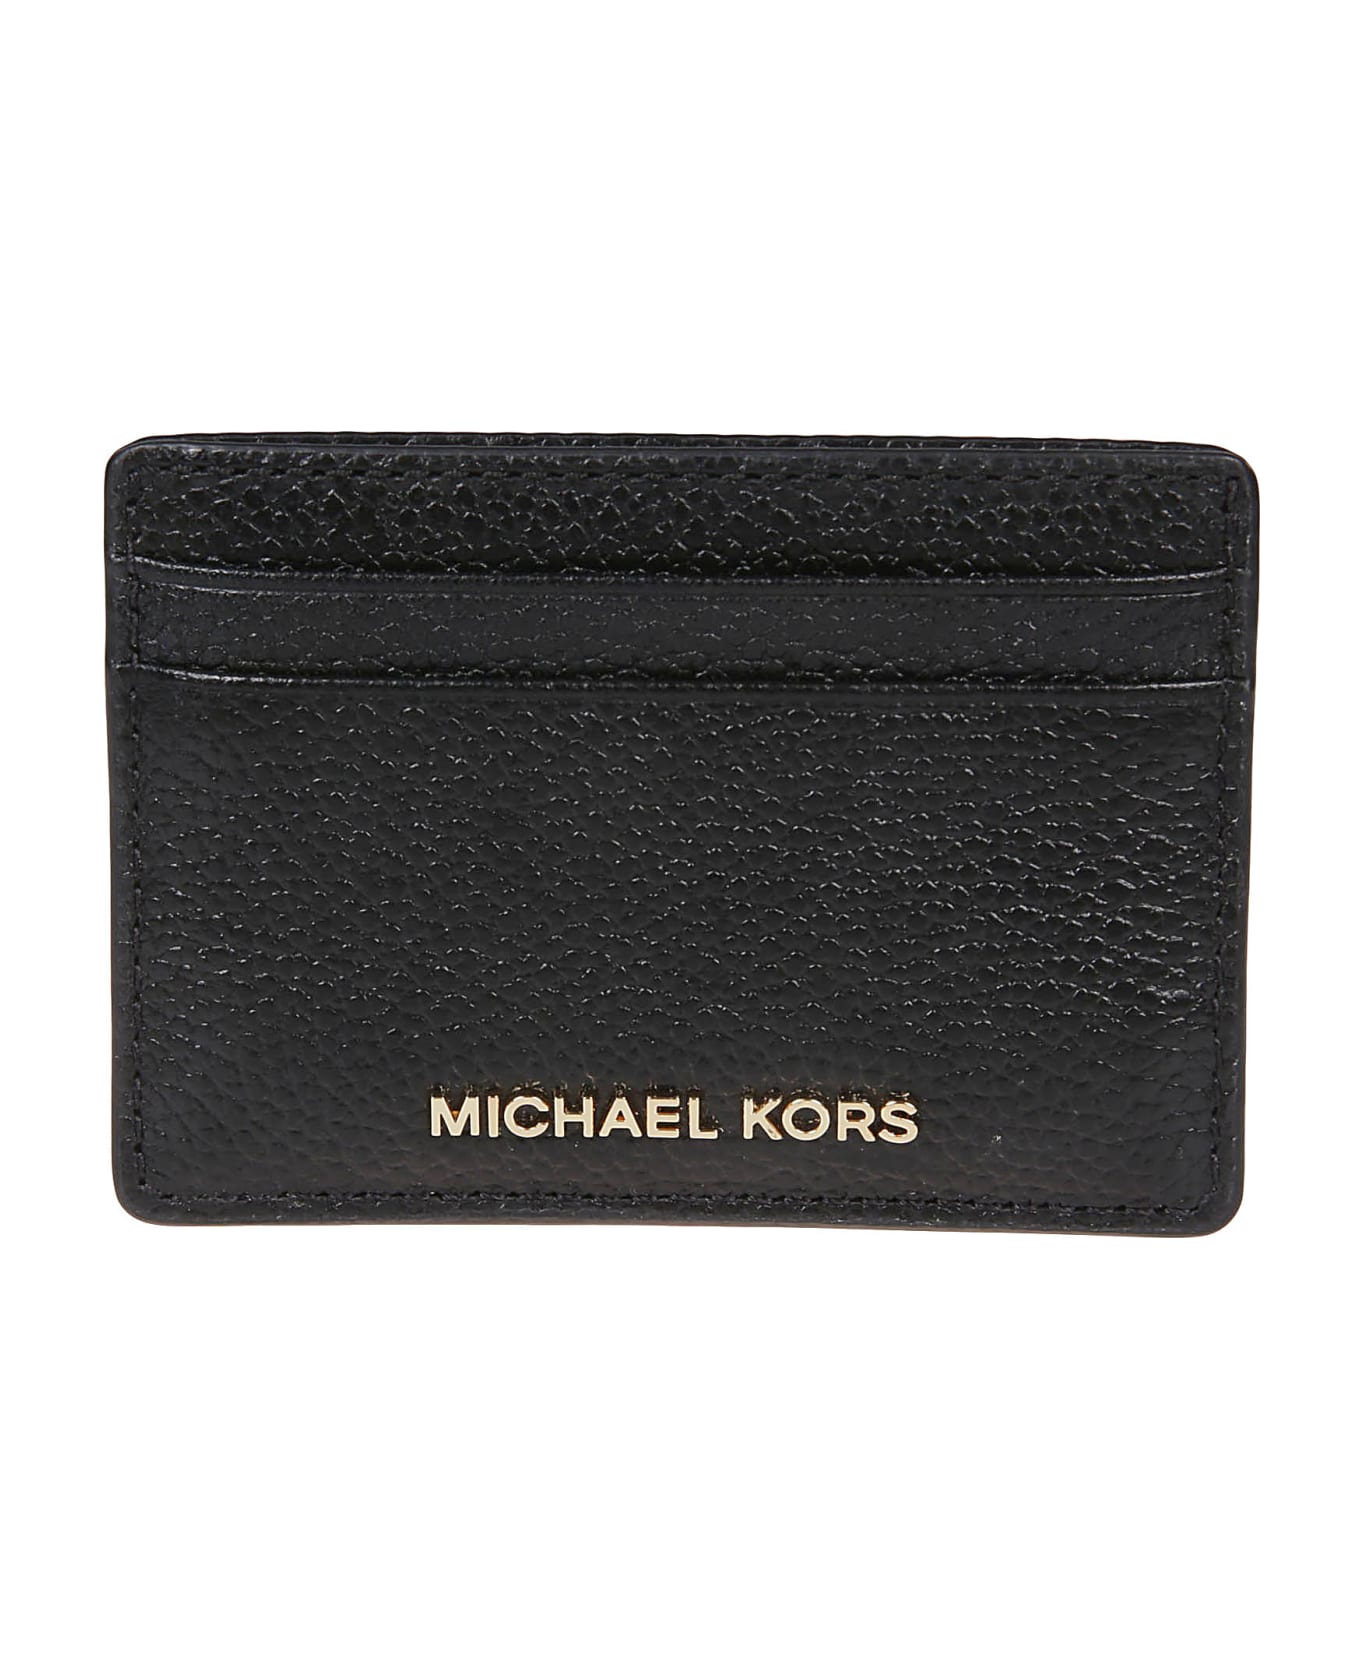 Michael Kors Jet Set Credit Card Holder - Black 財布